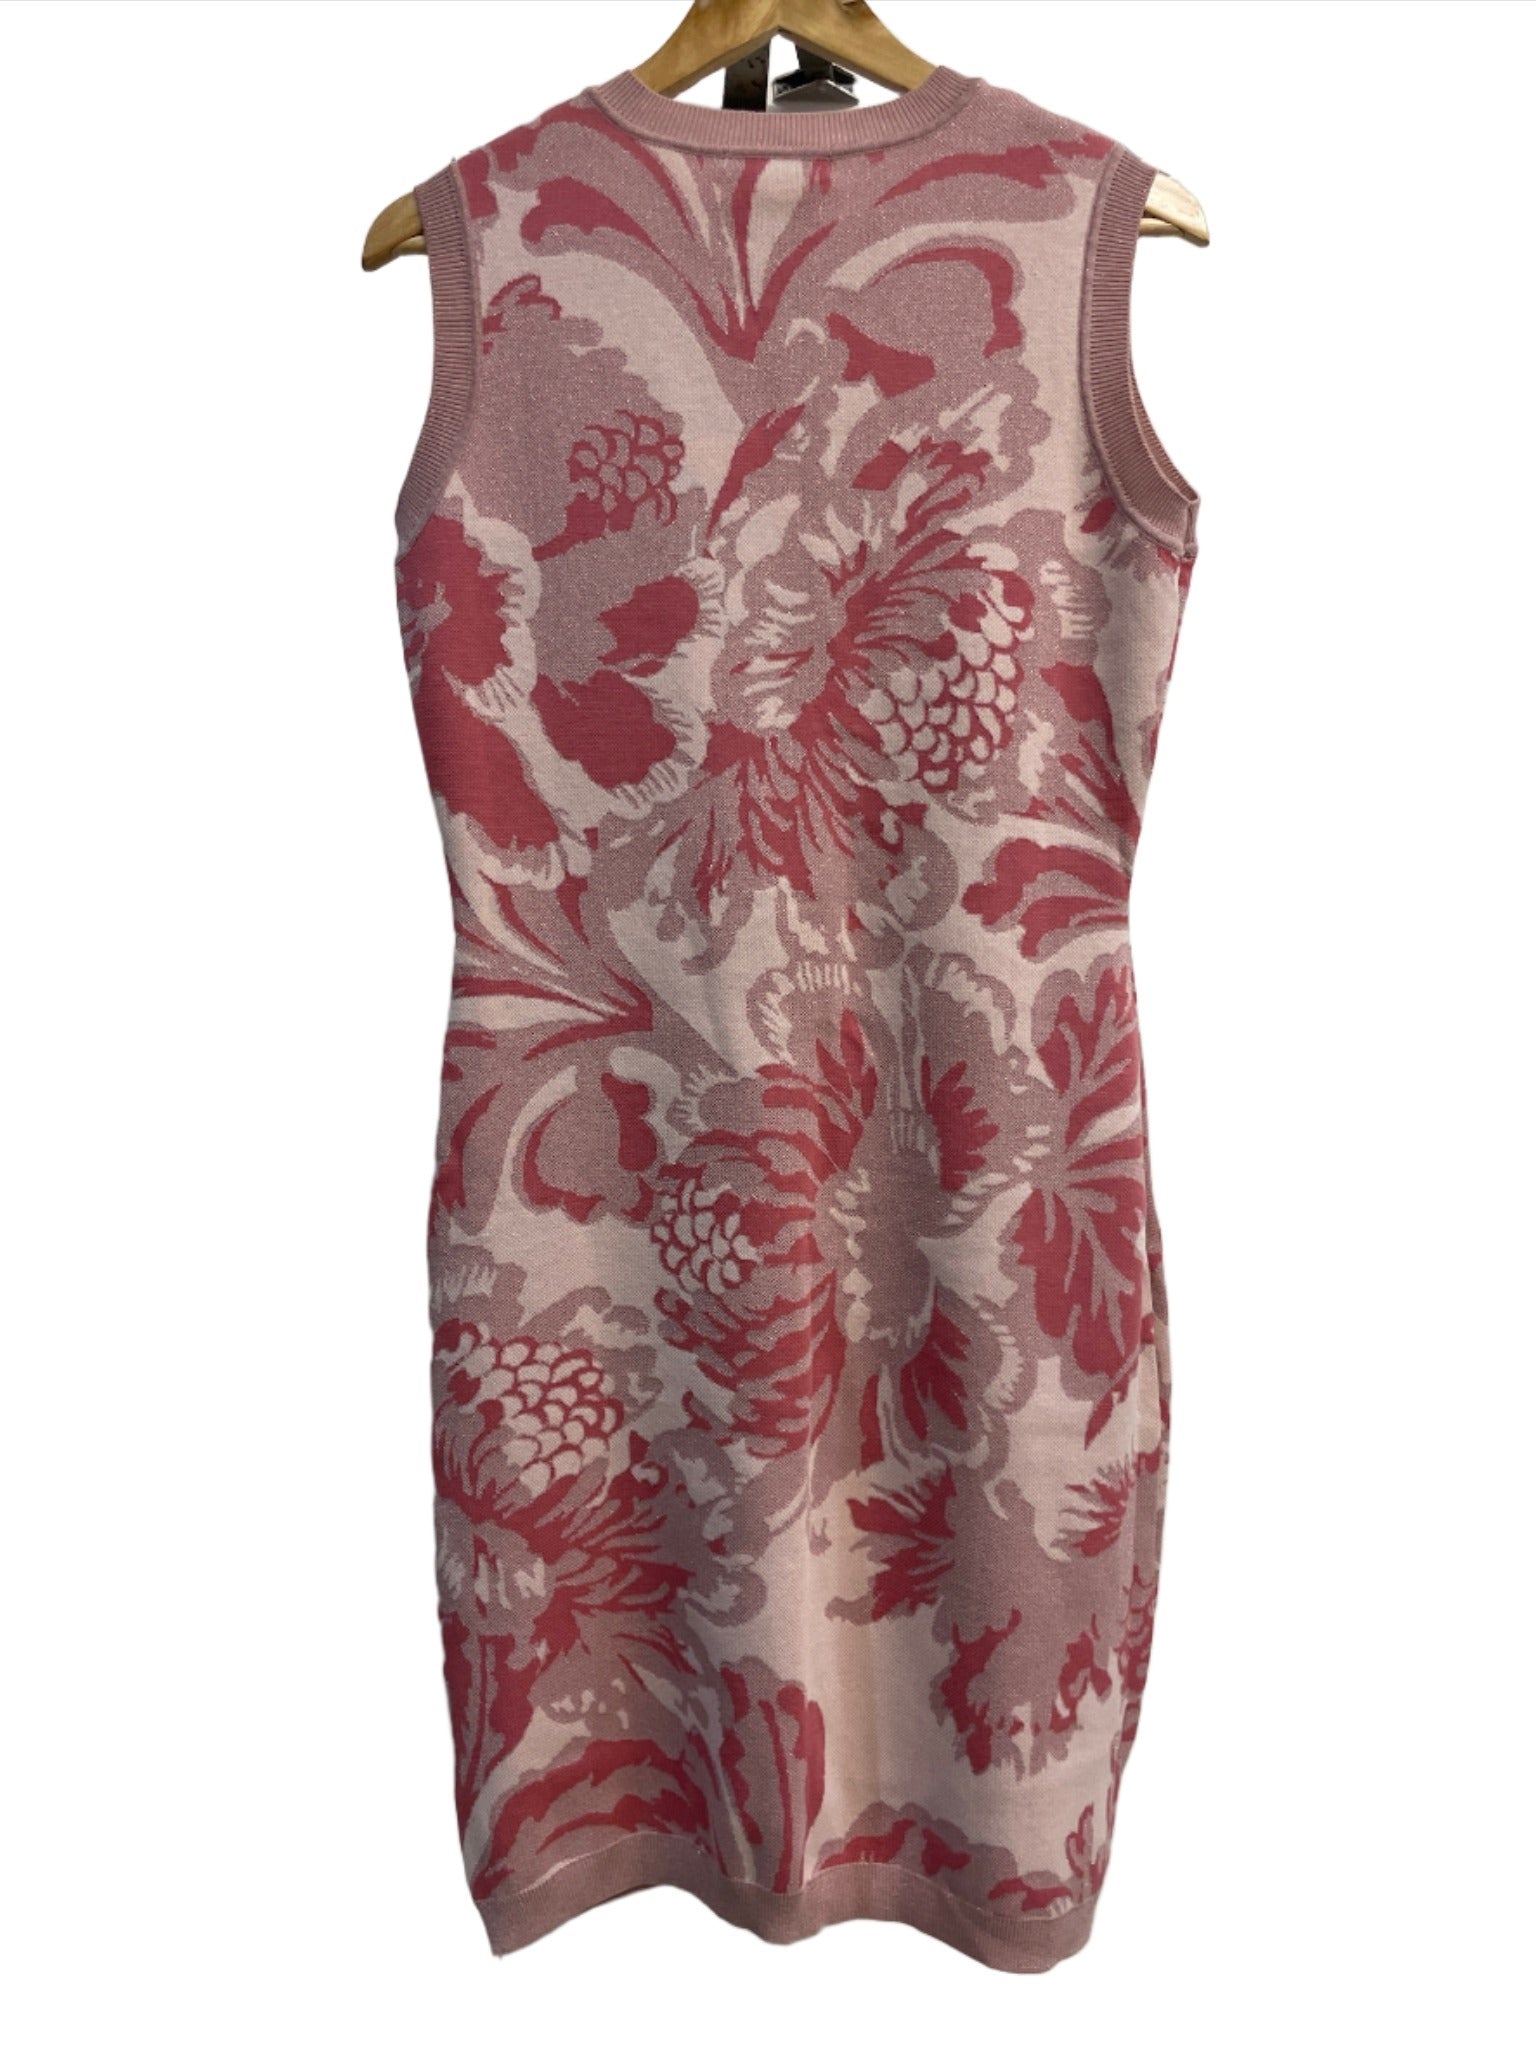 Moss & Spy Pink Floral Dress M/L